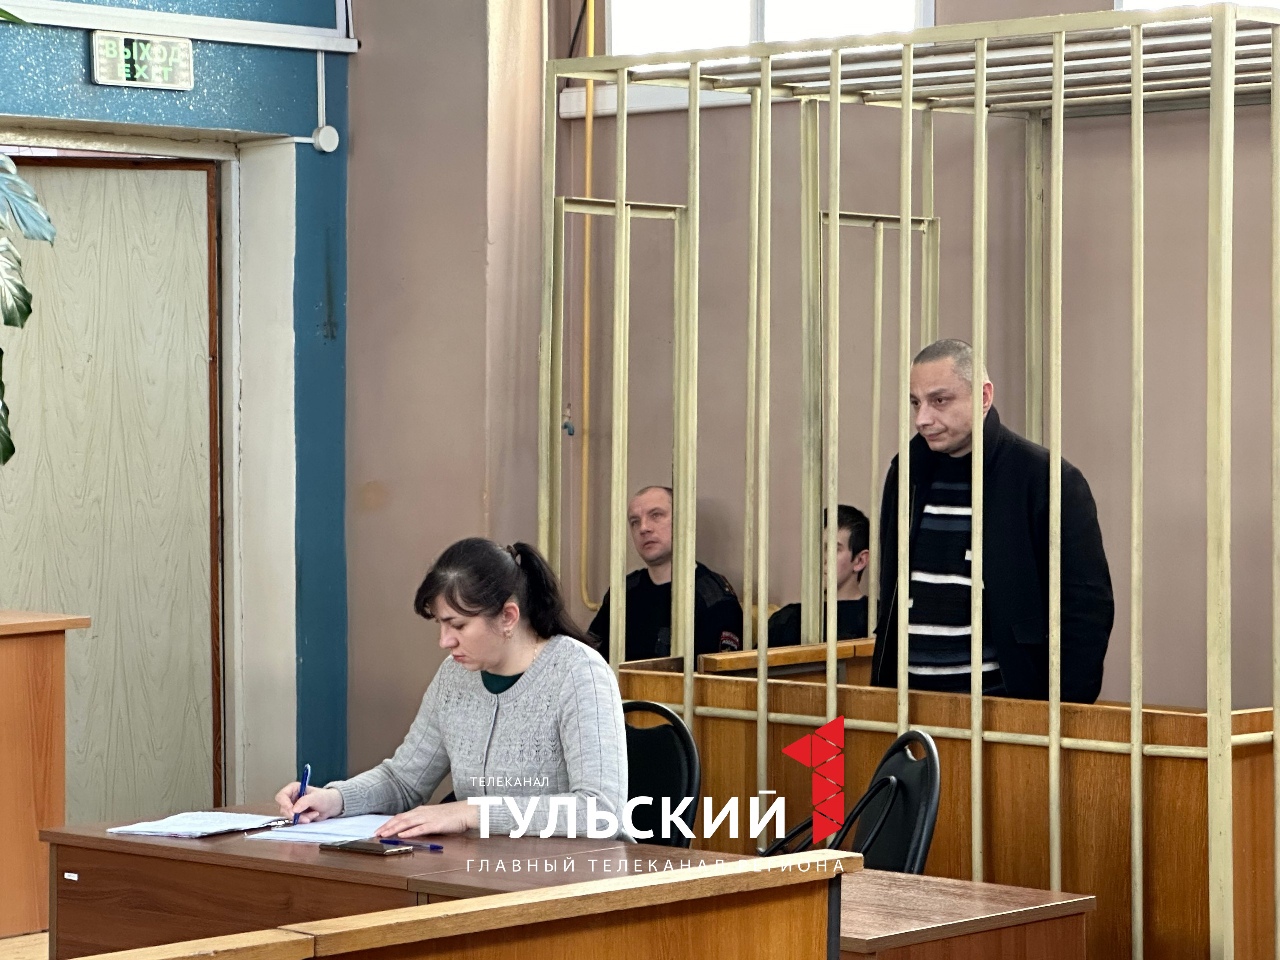 В г. Щекино пьяный мужчина 13 раз ударил знакомого ножом за оскорбления: суд вынес приговор